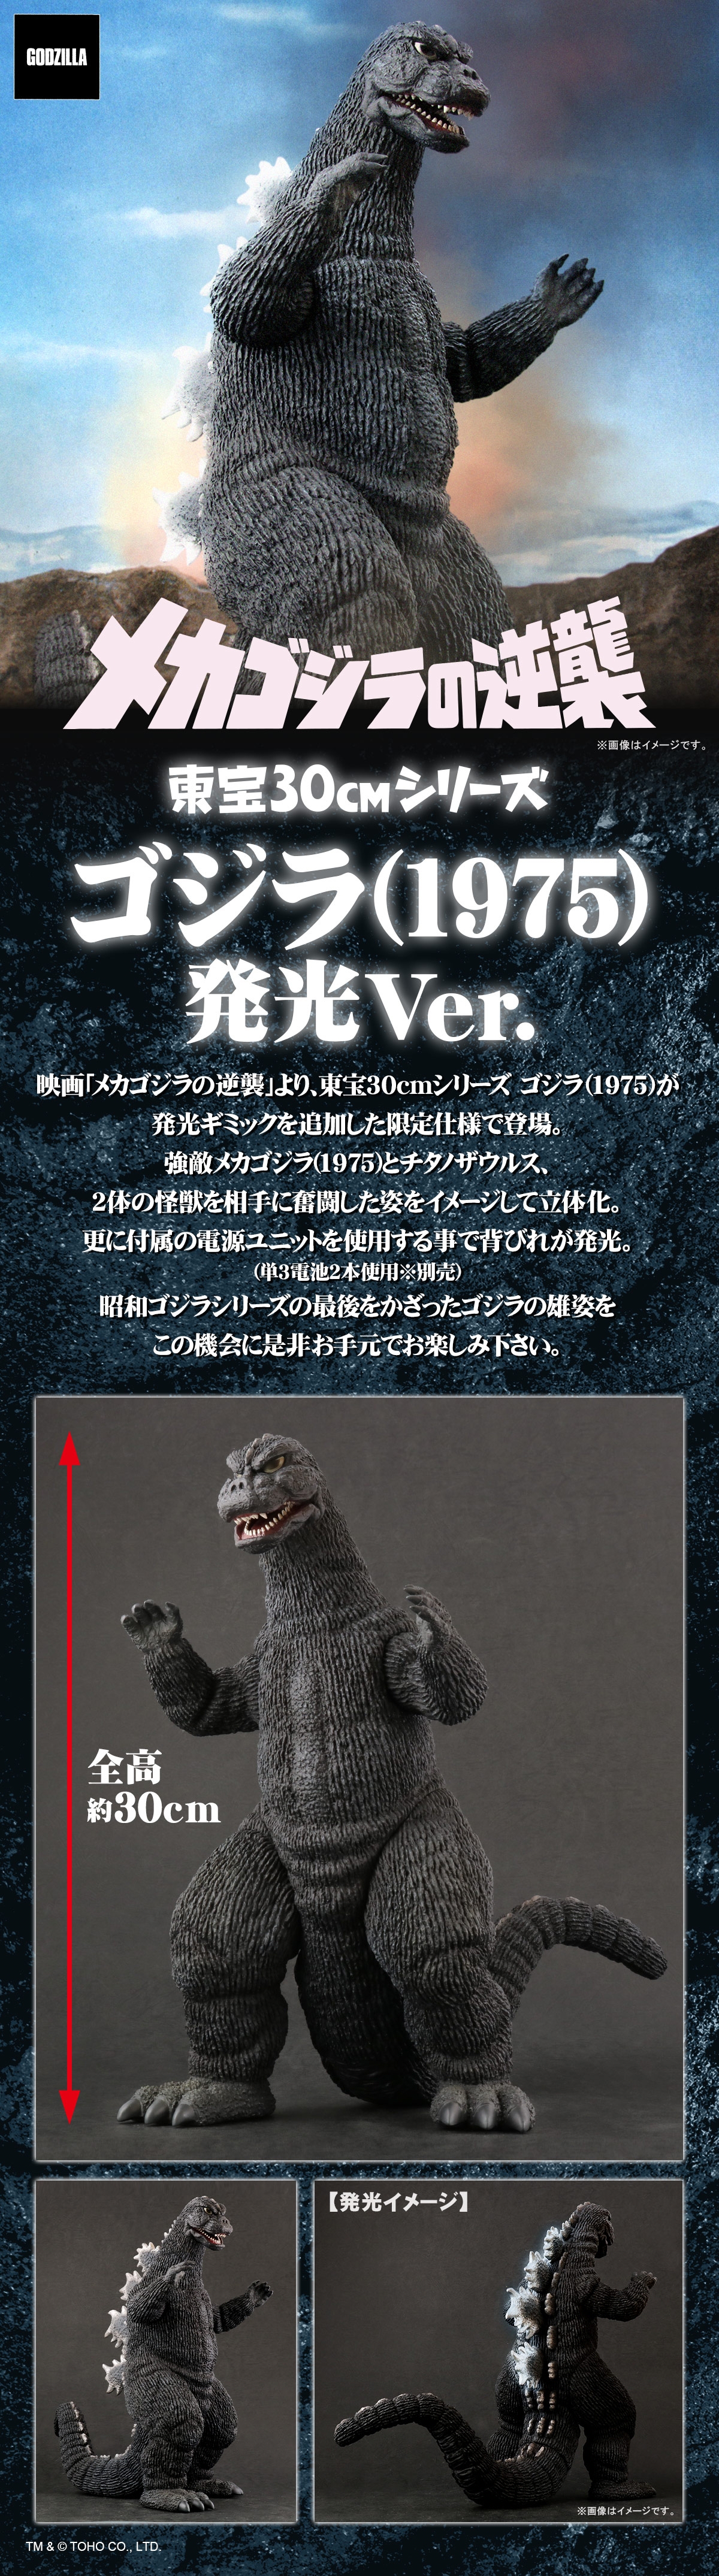 Godzilla1975lu promotional picture